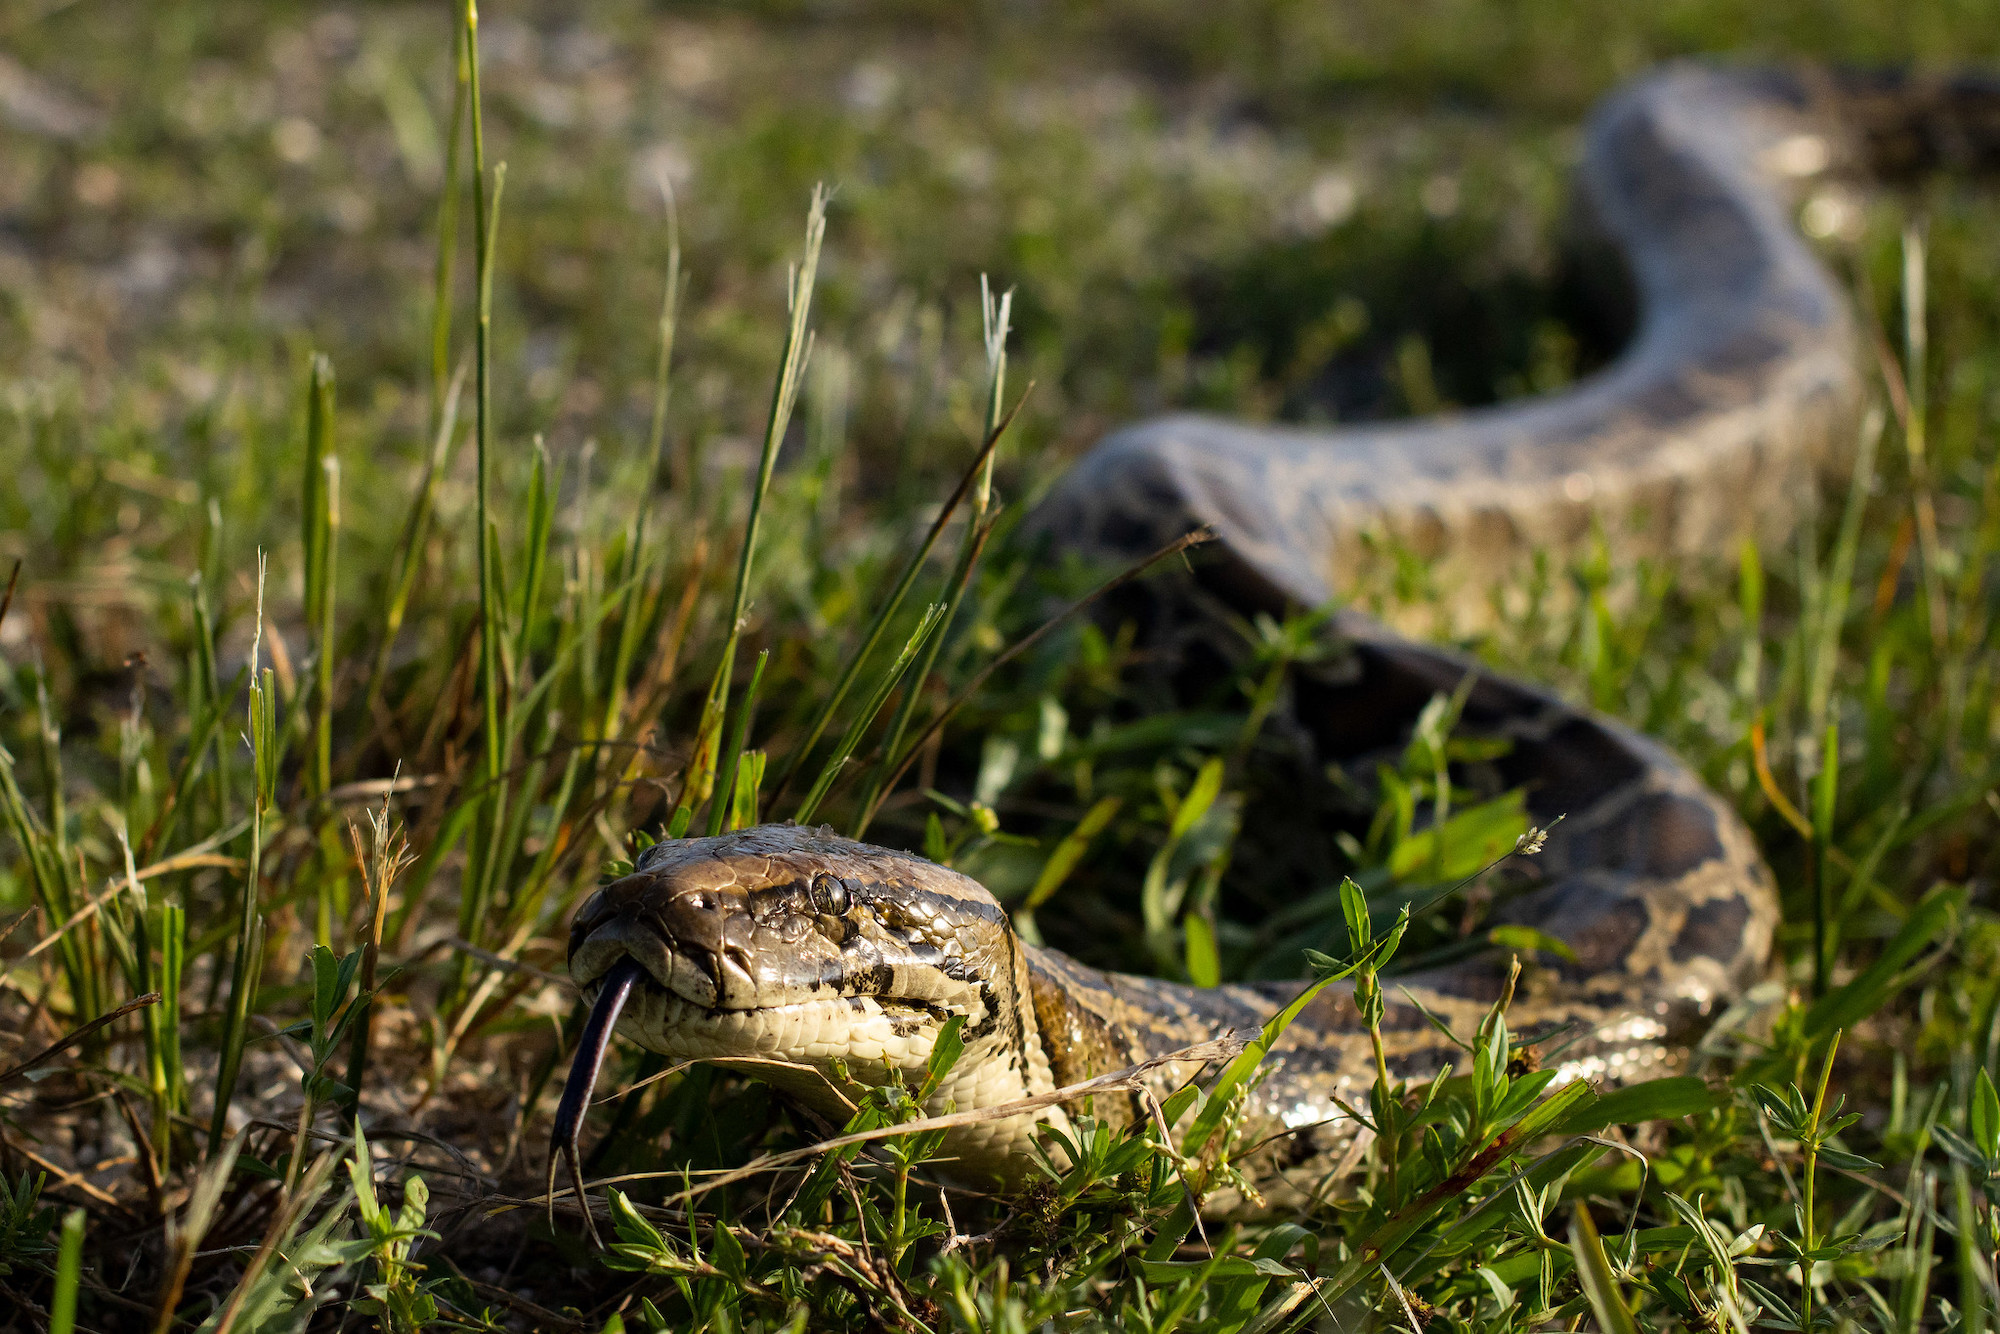 trouser snakes, FL burmese python